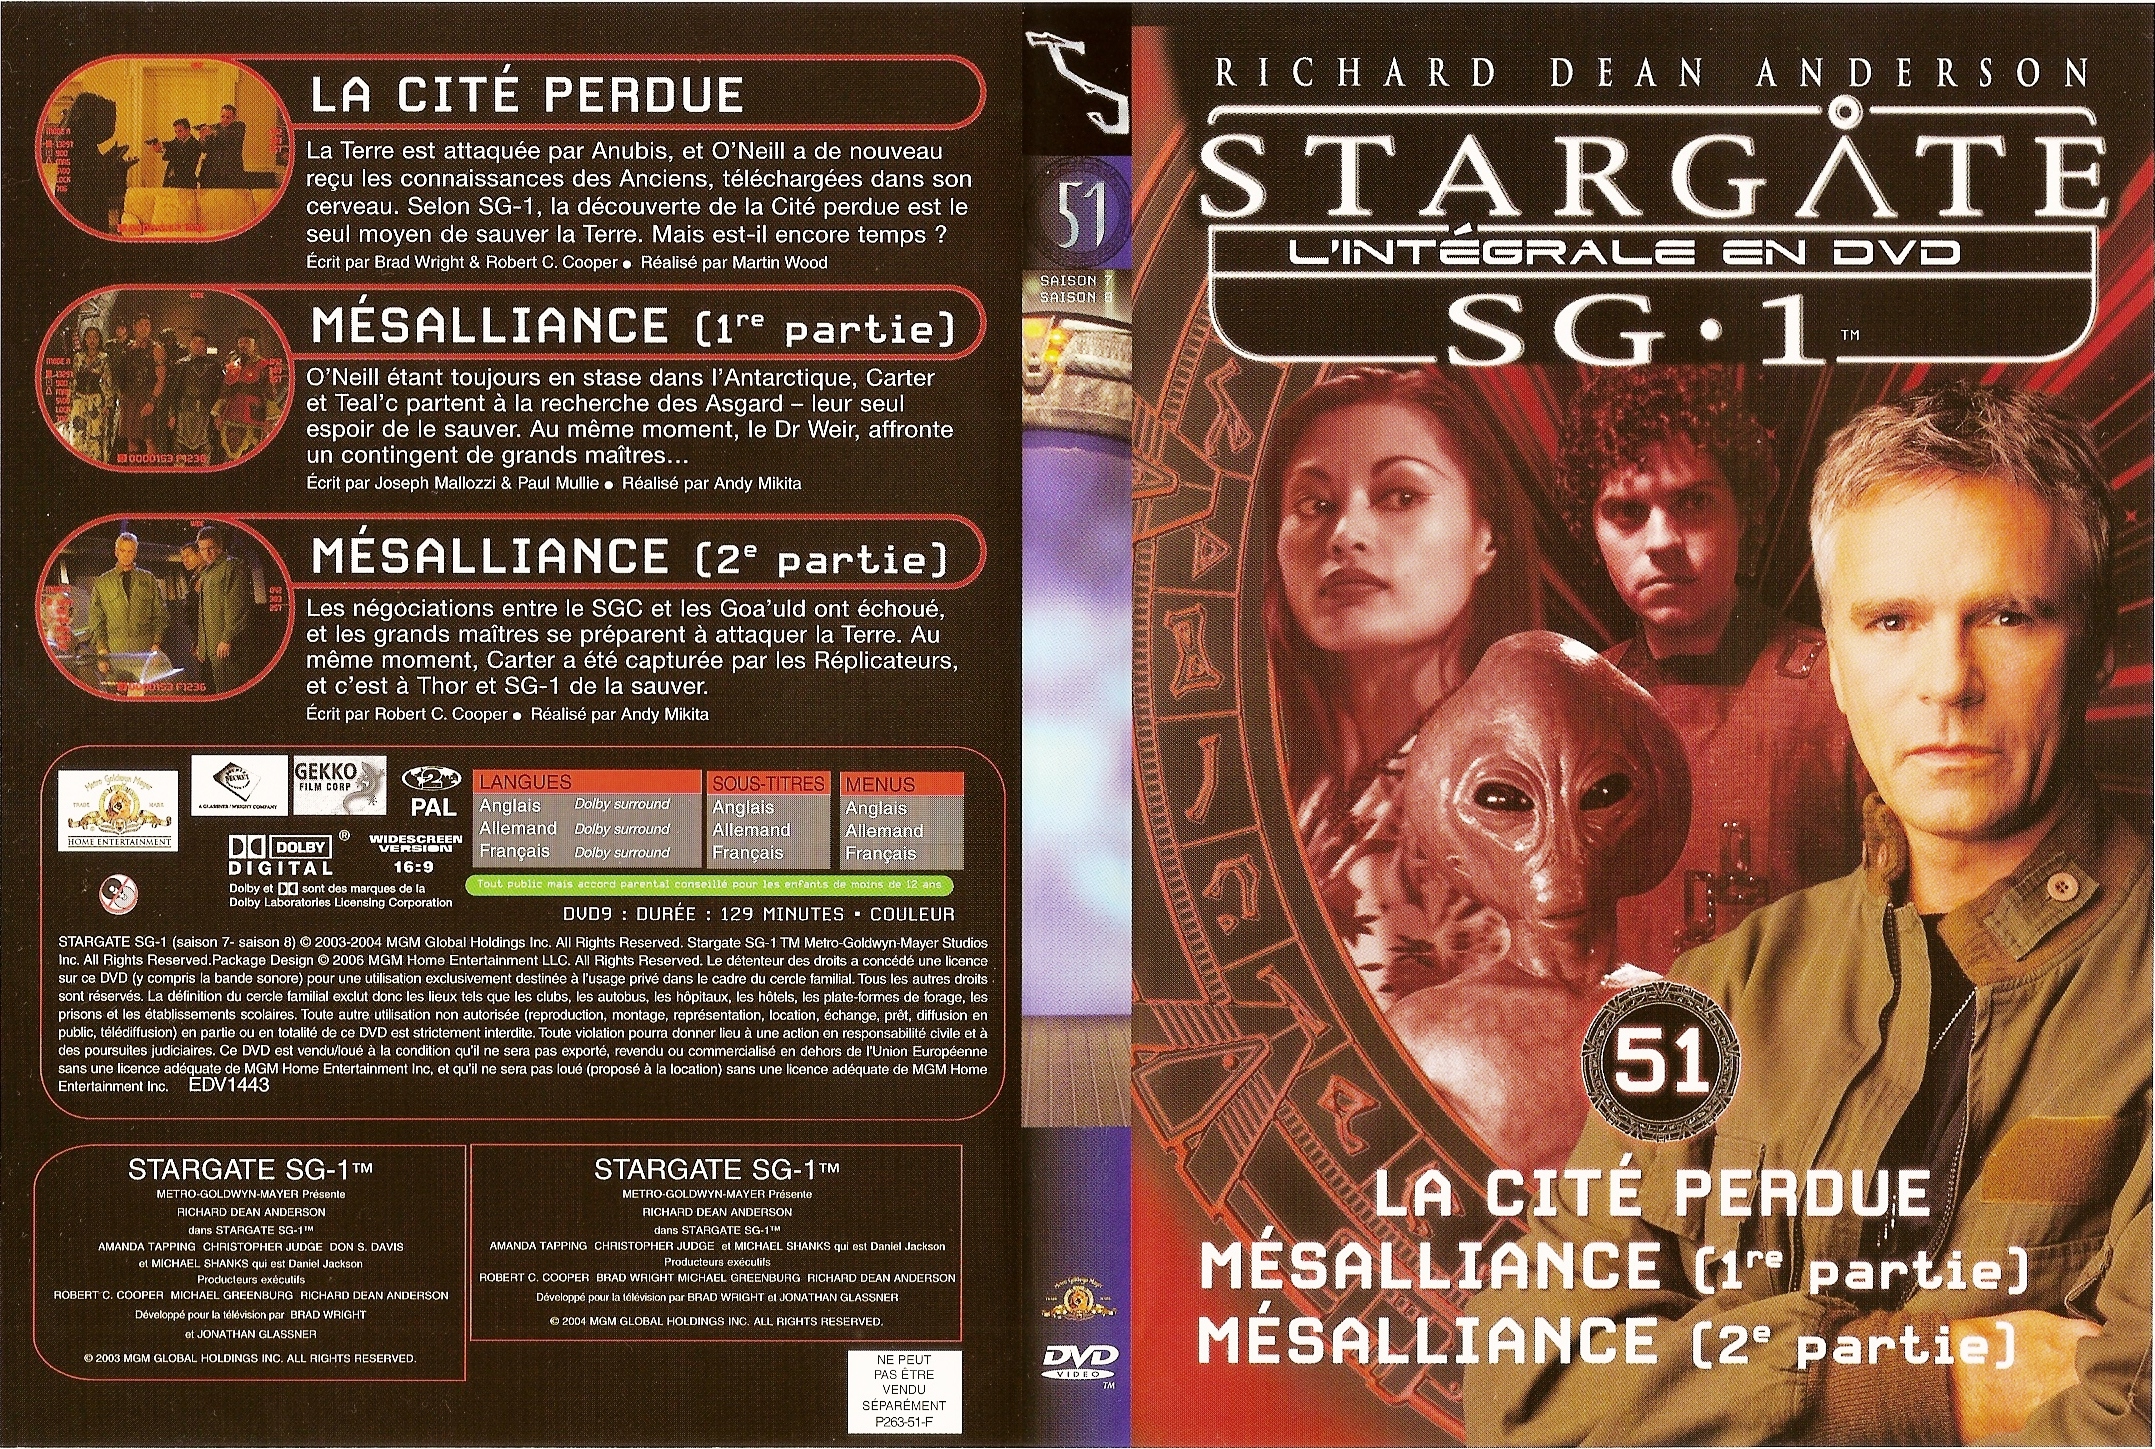 Jaquette DVD Stargate saison 7 et 8 vol 51